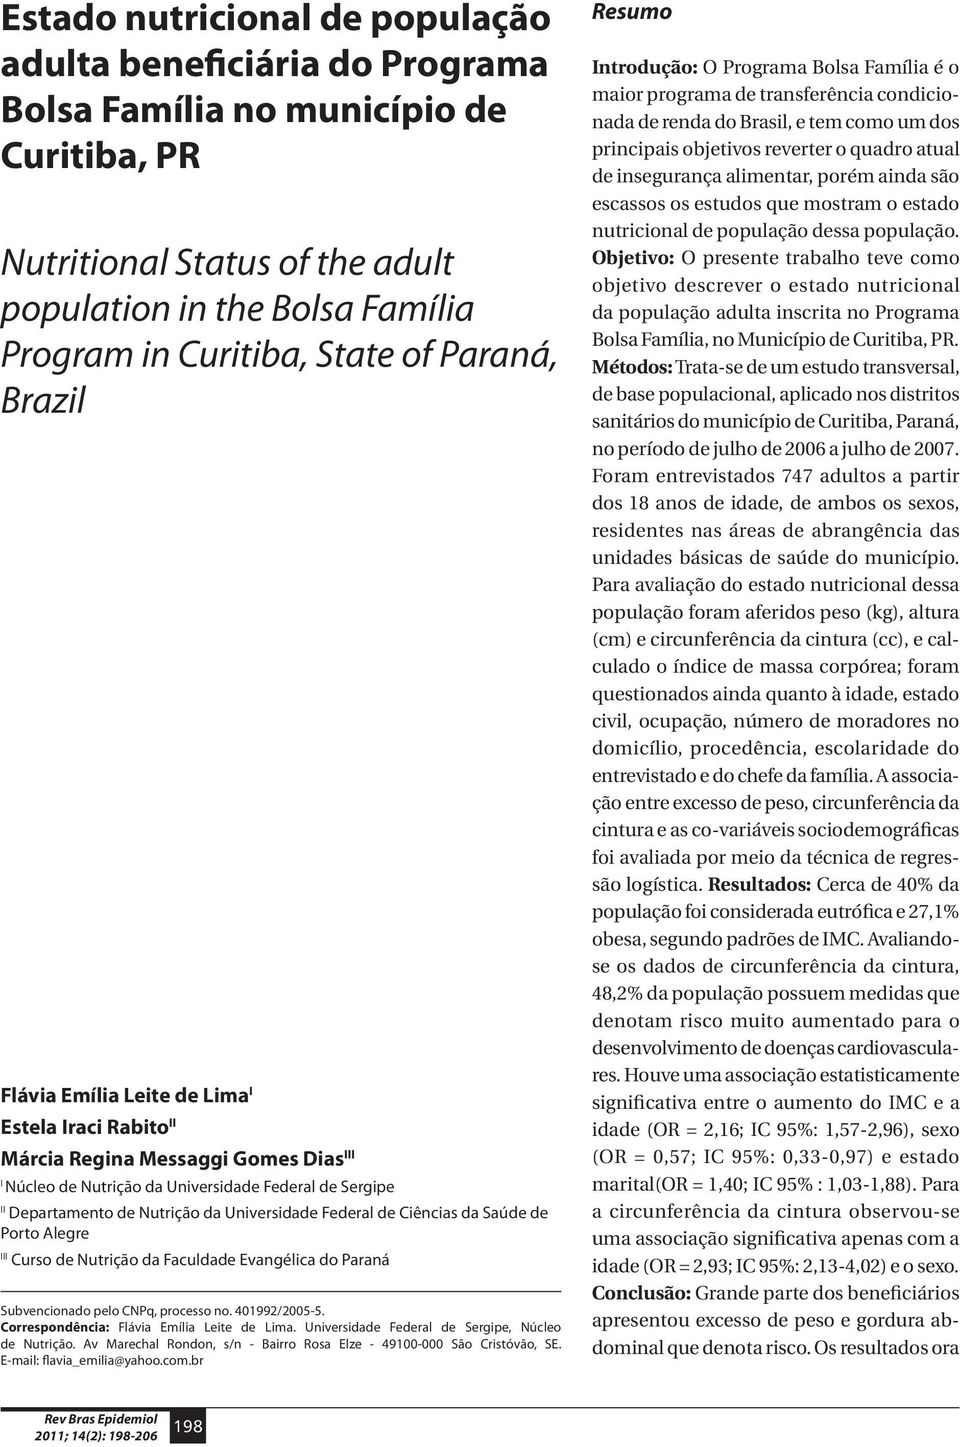 Universidade Federal de Ciências da Saúde de Porto Alegre III Curso de Nutrição da Faculdade Evangélica do Paraná Subvencionado pelo CNPq, processo no. 401992/2005-5.